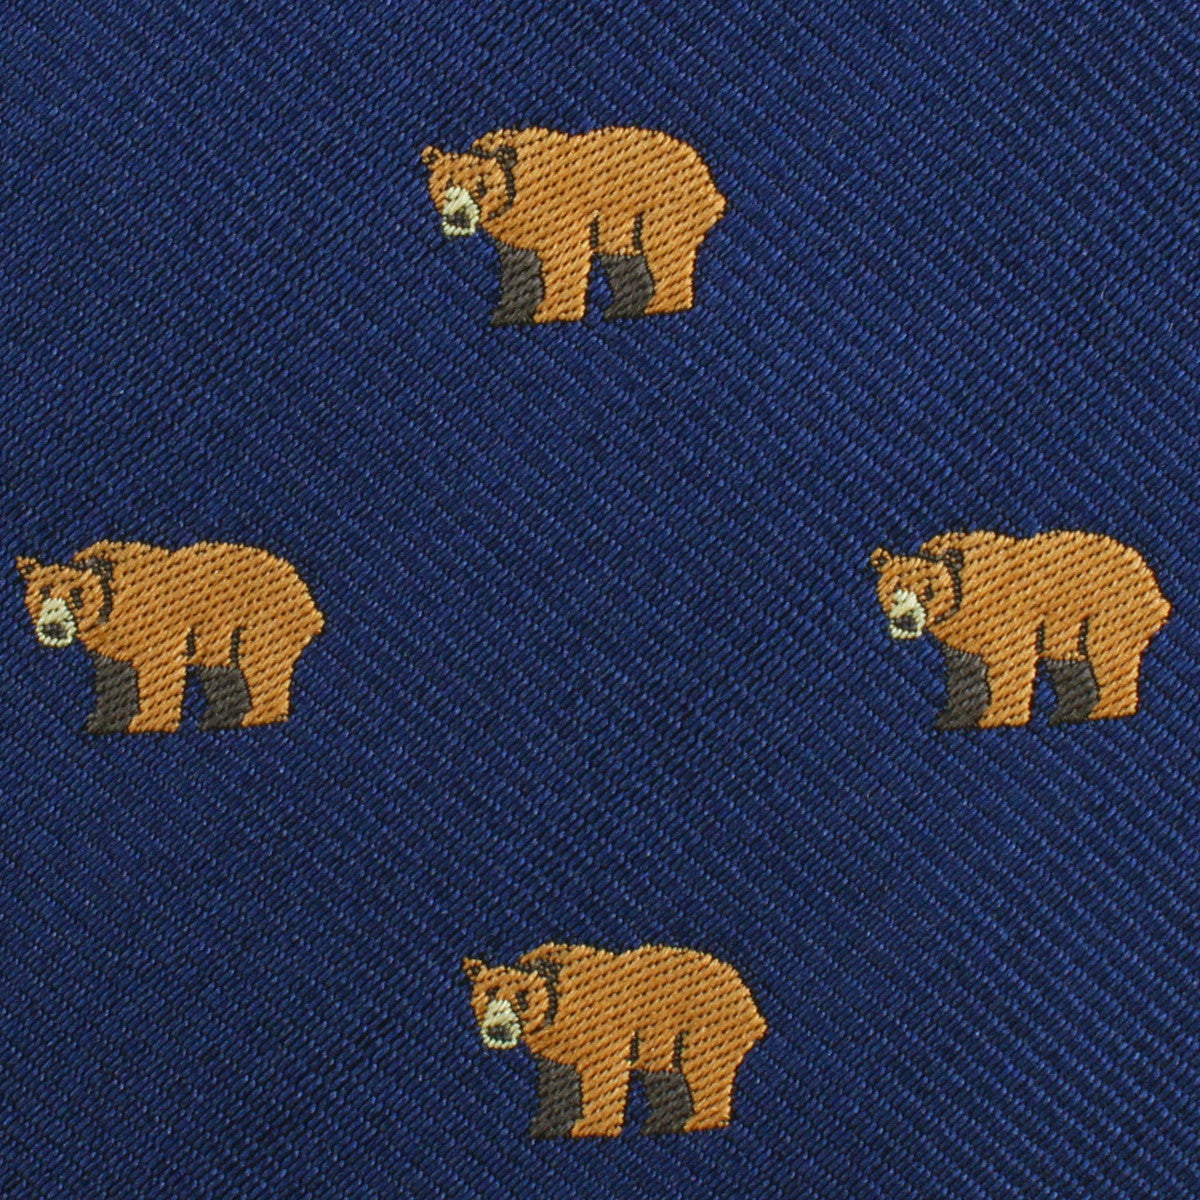 Lazy Bear Fabric Skinny Tie